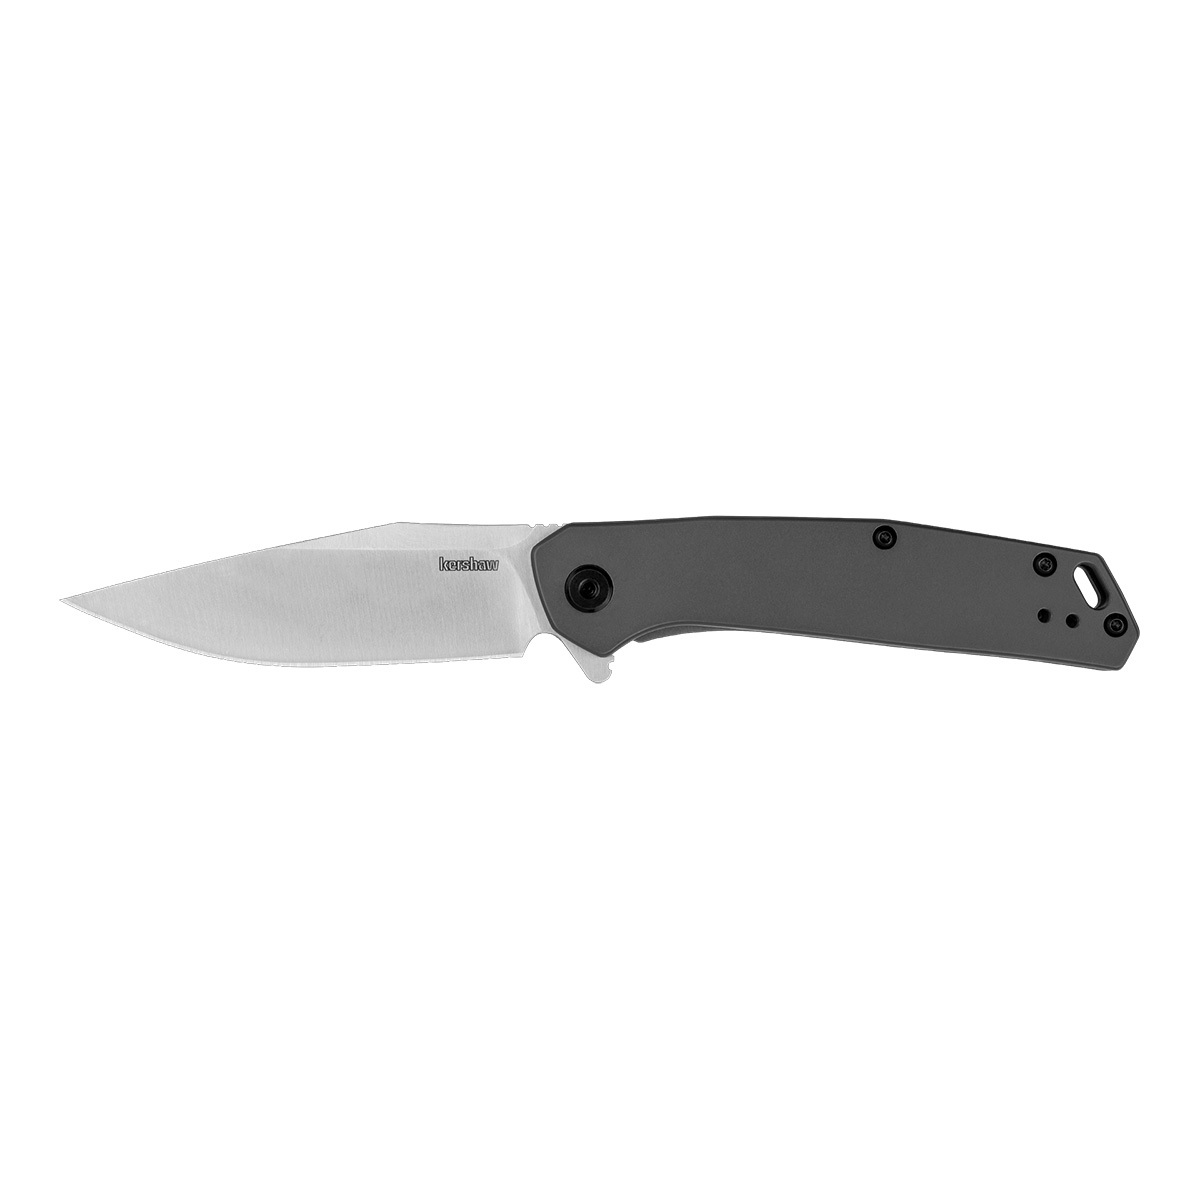 Полуавтоматический складной нож Kershaw Align, сталь 8Cr13MoV, рукоять нержавеющая сталь - фото 1